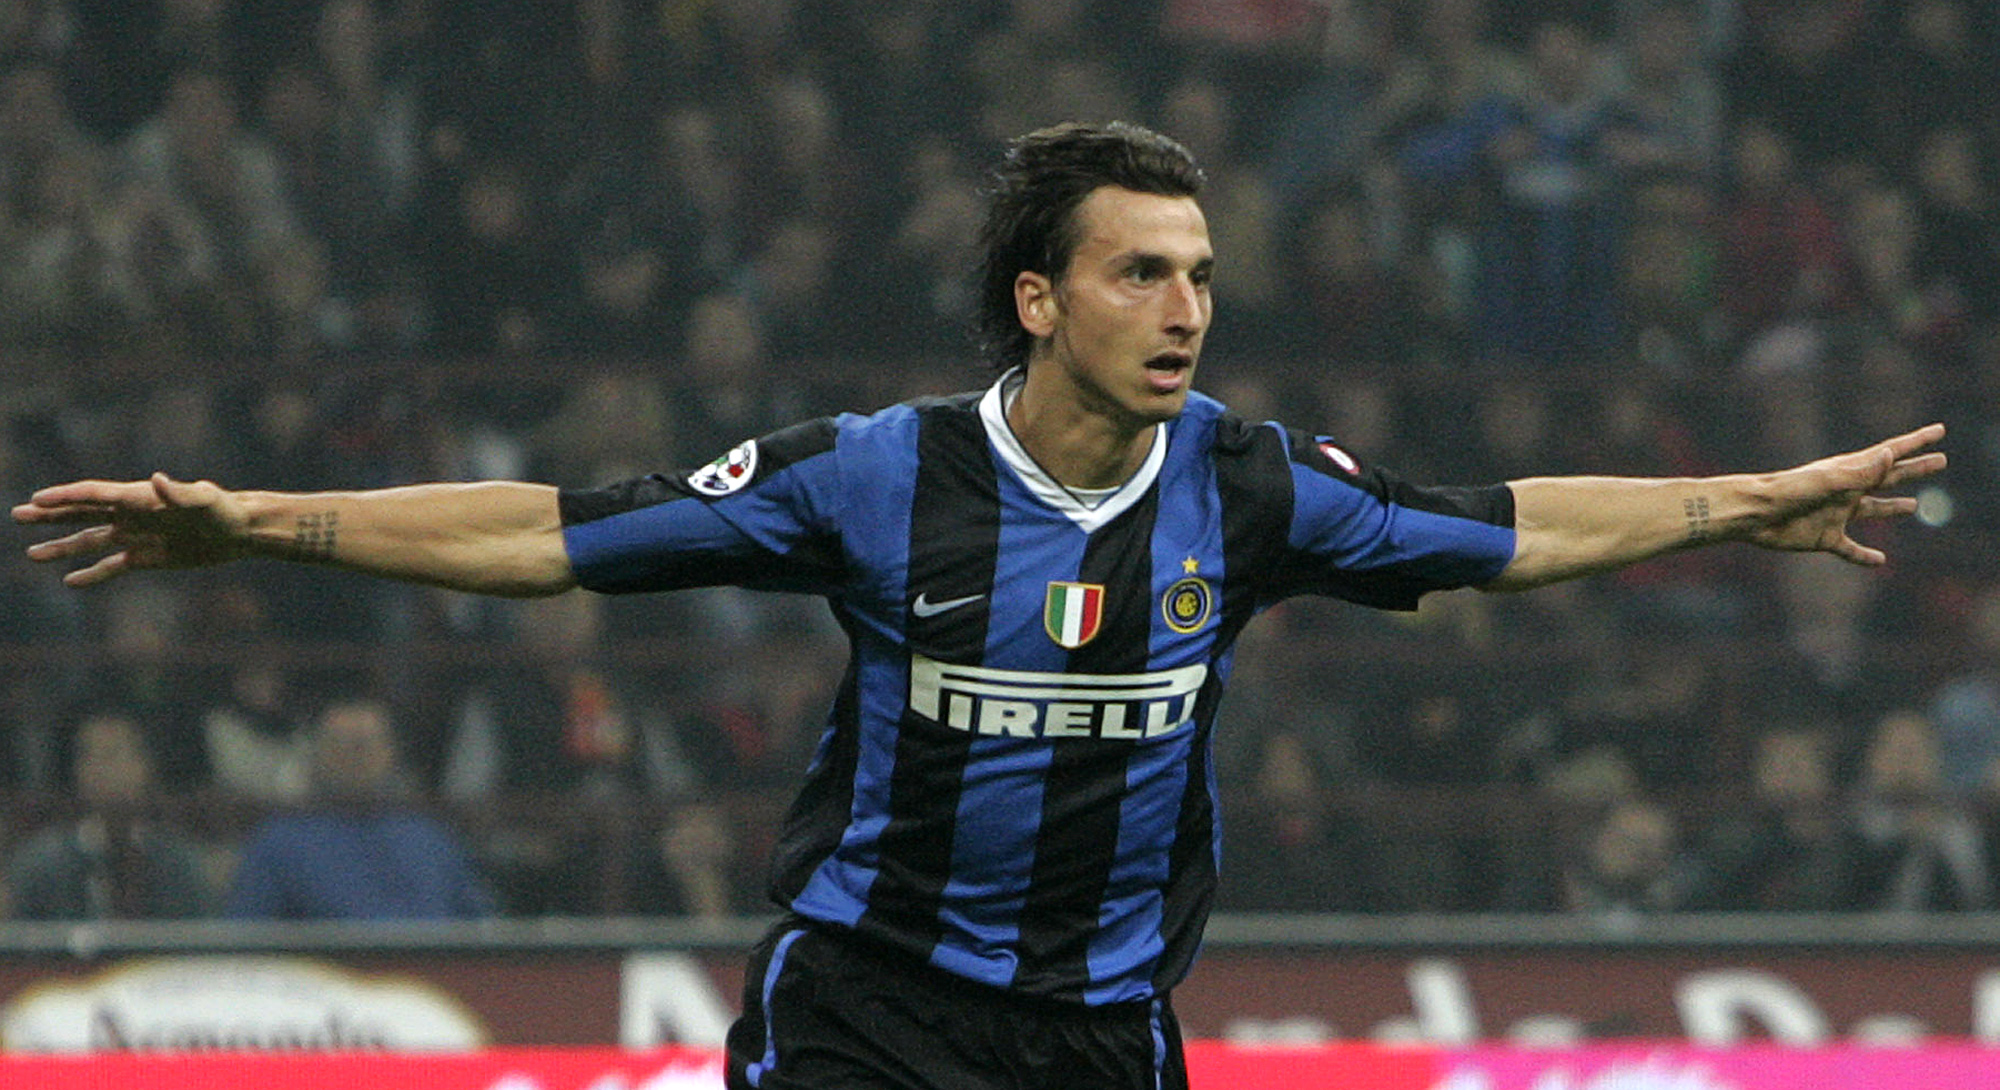 I seriedebuten för Inter gör han mål mot Fiorentina. Under säsongen 2006/2007 blir han italiensk mästare med Inter och vinner Inters interna skytteliga på 15 mål.